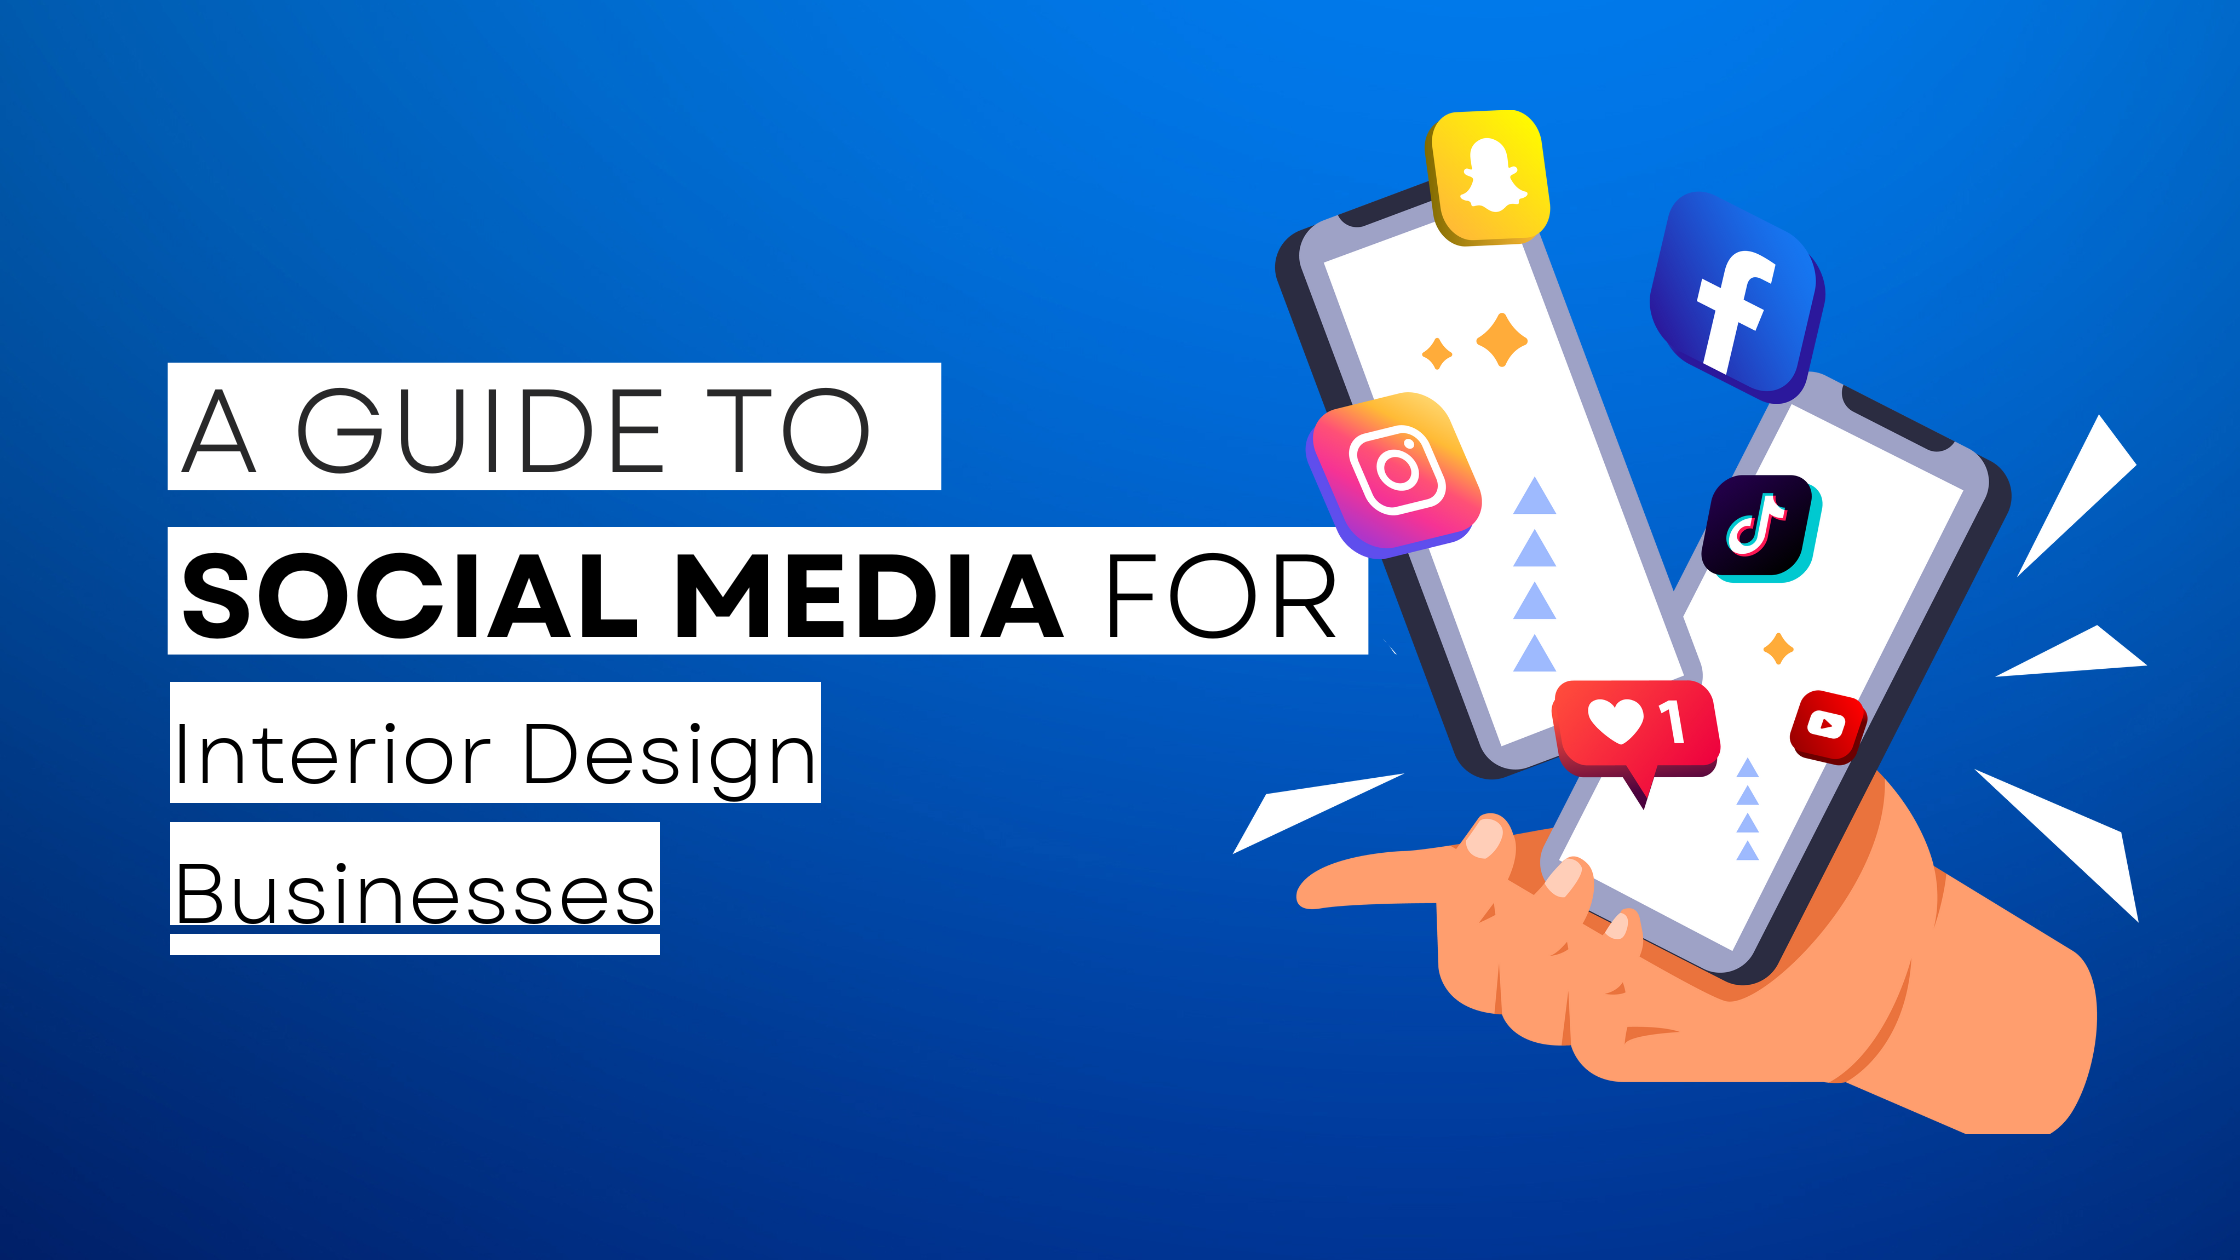 How to start Interior Design on social media